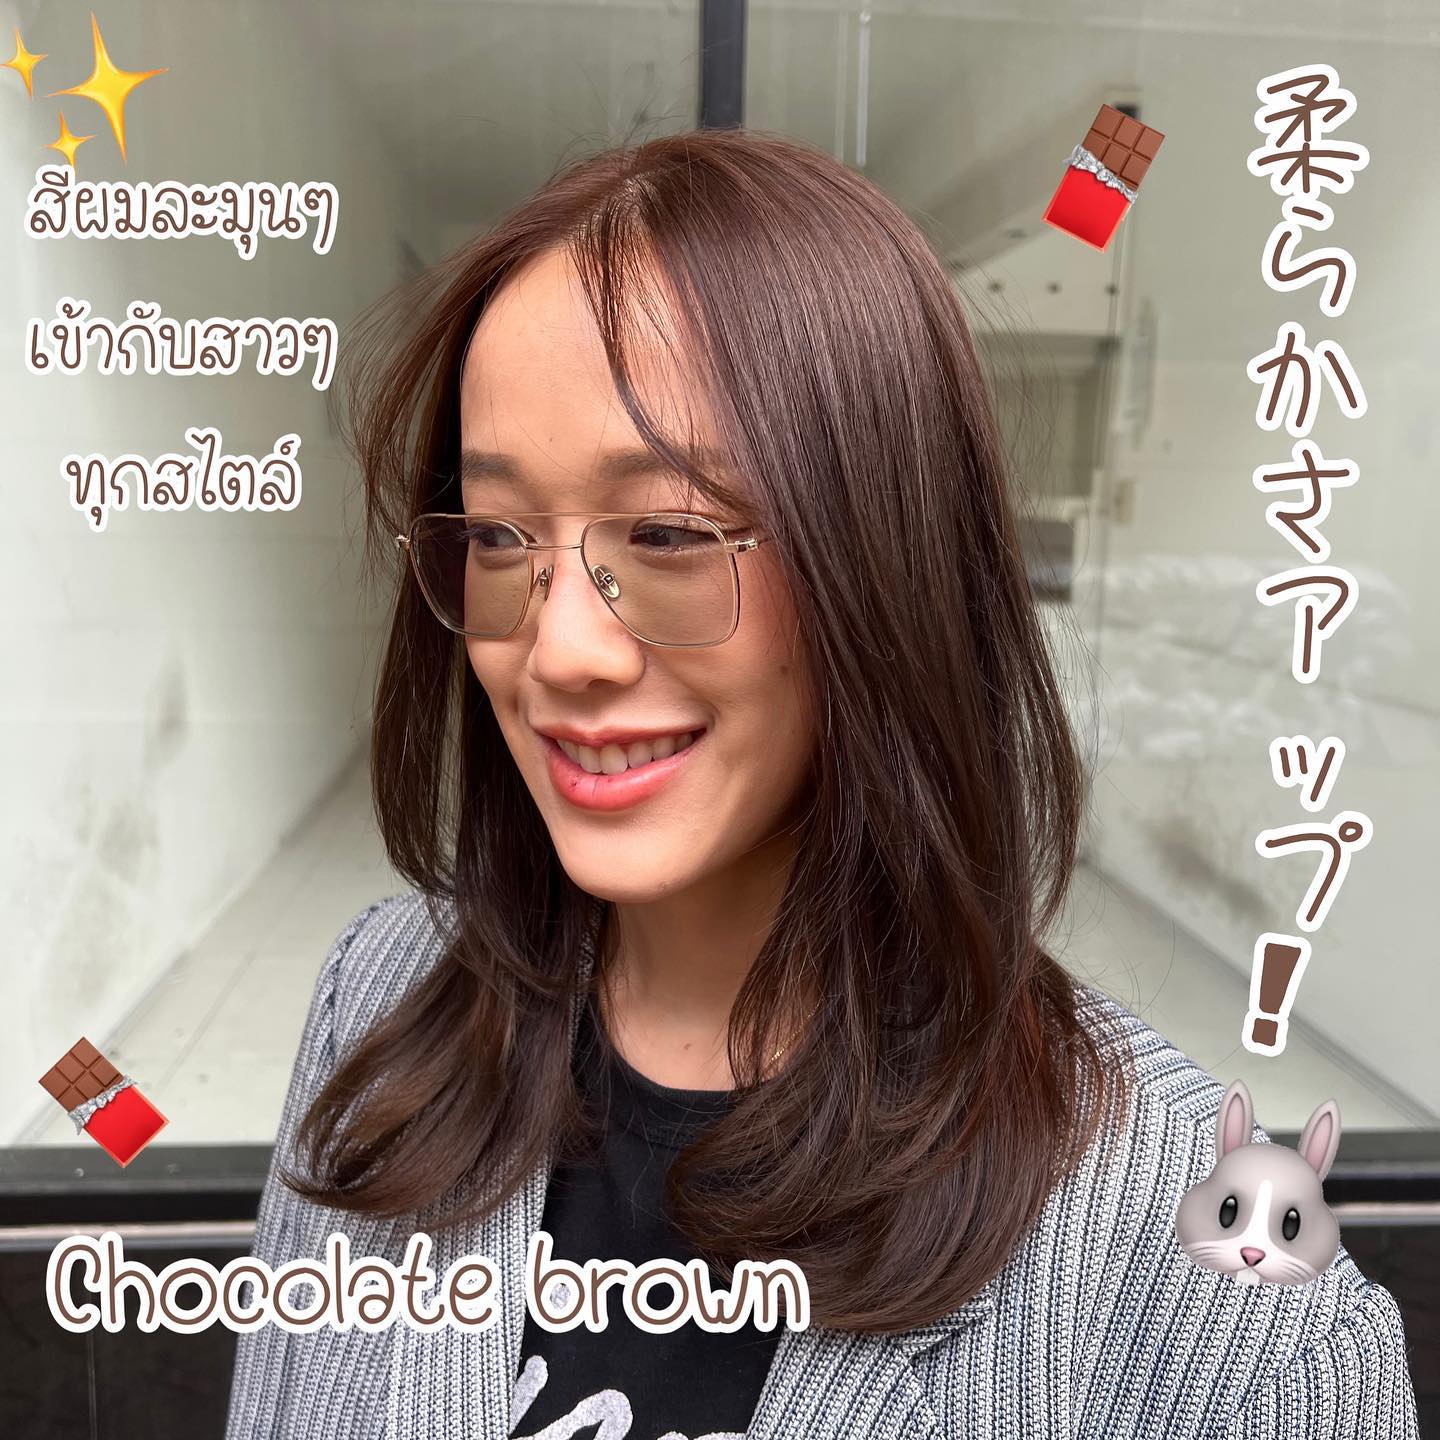 สีละมุนๆ ที่เหมาะกับสาวๆ ทุกสไตล์
Chocolate Brown  Stylist Yamada  YAMS hair&cafe  For booking/ご予約、お問い合わせ↓
LINE ID:@qai5573z
Tel:02-163-4973  Business hours/営業時間↓
9:00 - 18:00
Closed on Wednesday,2nd & 4th Thursday  #ร้านทำผมญี่ปุ่น #YAMShaircafe #ตัดผมญี่ปุ่น #ยืดผมญี่ปุ่น #ดัดผมญี่ปุ่น #ร้านทำผม #バンコク生活 #バンコク在住 #バンコク暮らし #バンコク子連れ美容室 #バンコク美容室